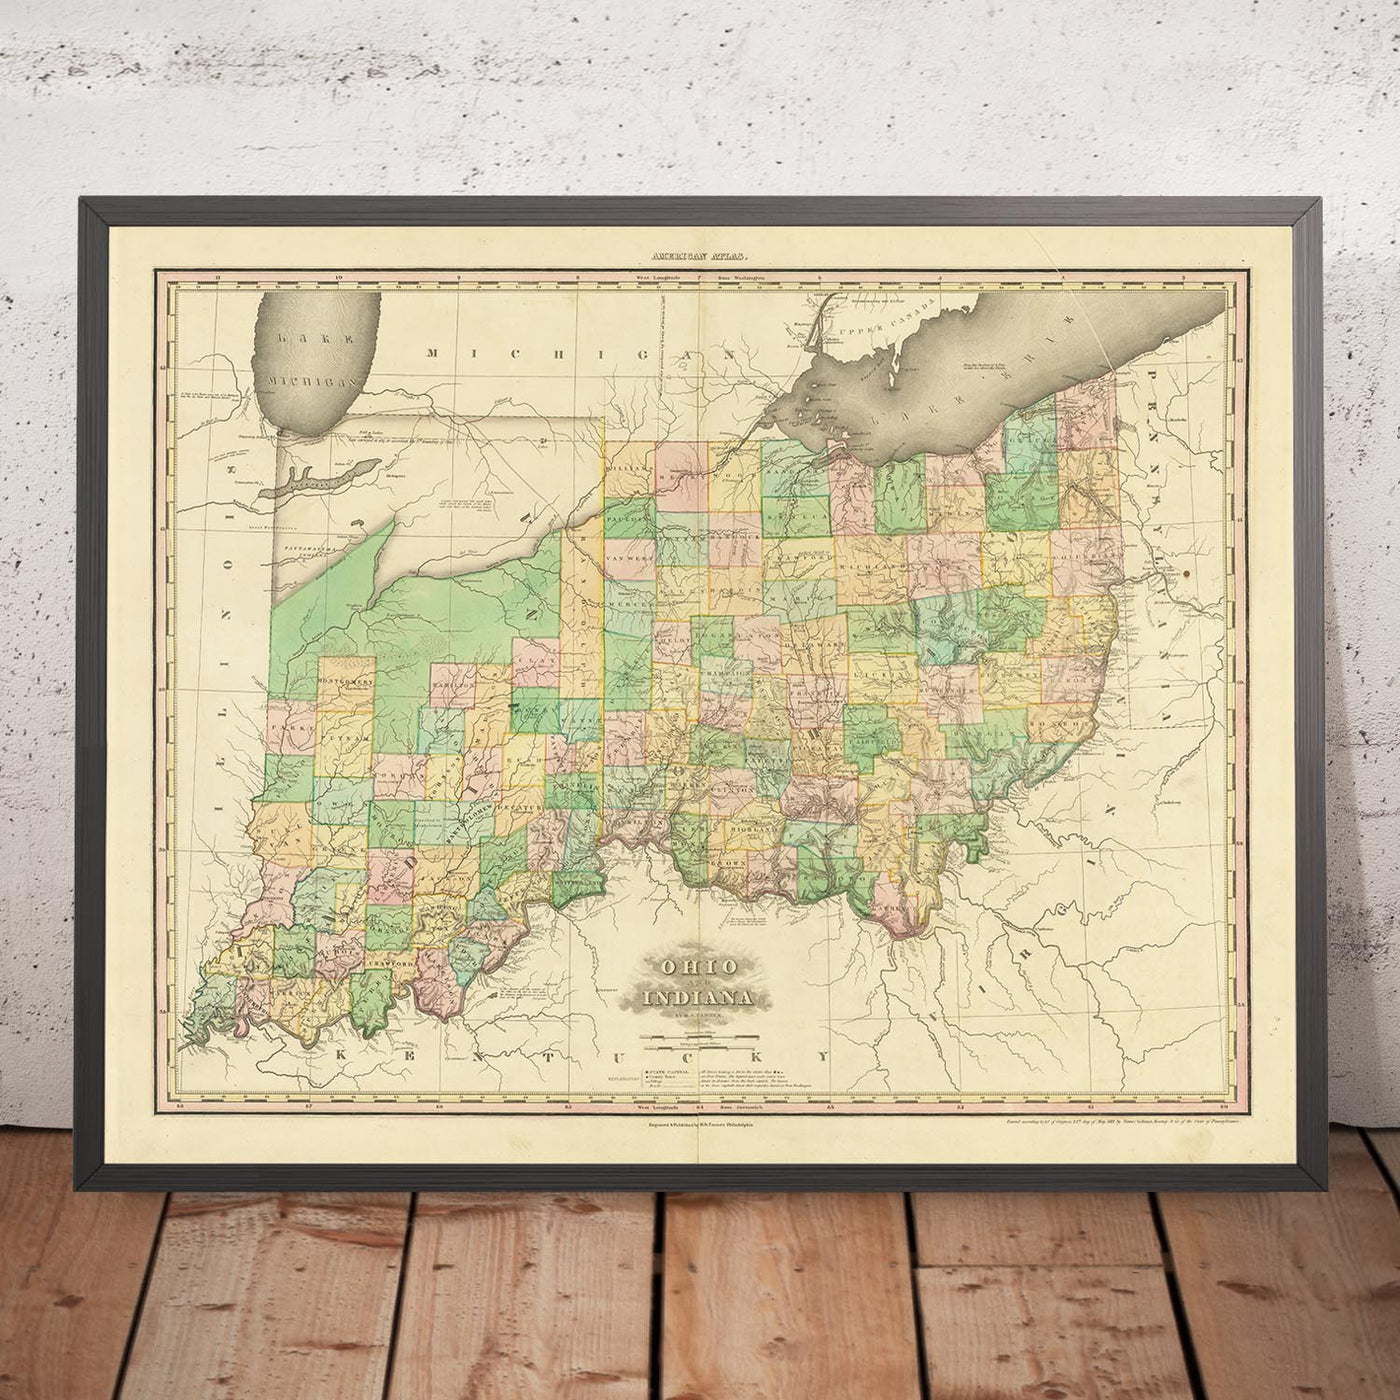 Alte Karte von Ohio und Indiana von H.S. Tanner, 1820: Cincinnati, Columbus, Indianapolis, Cleveland und Dayton